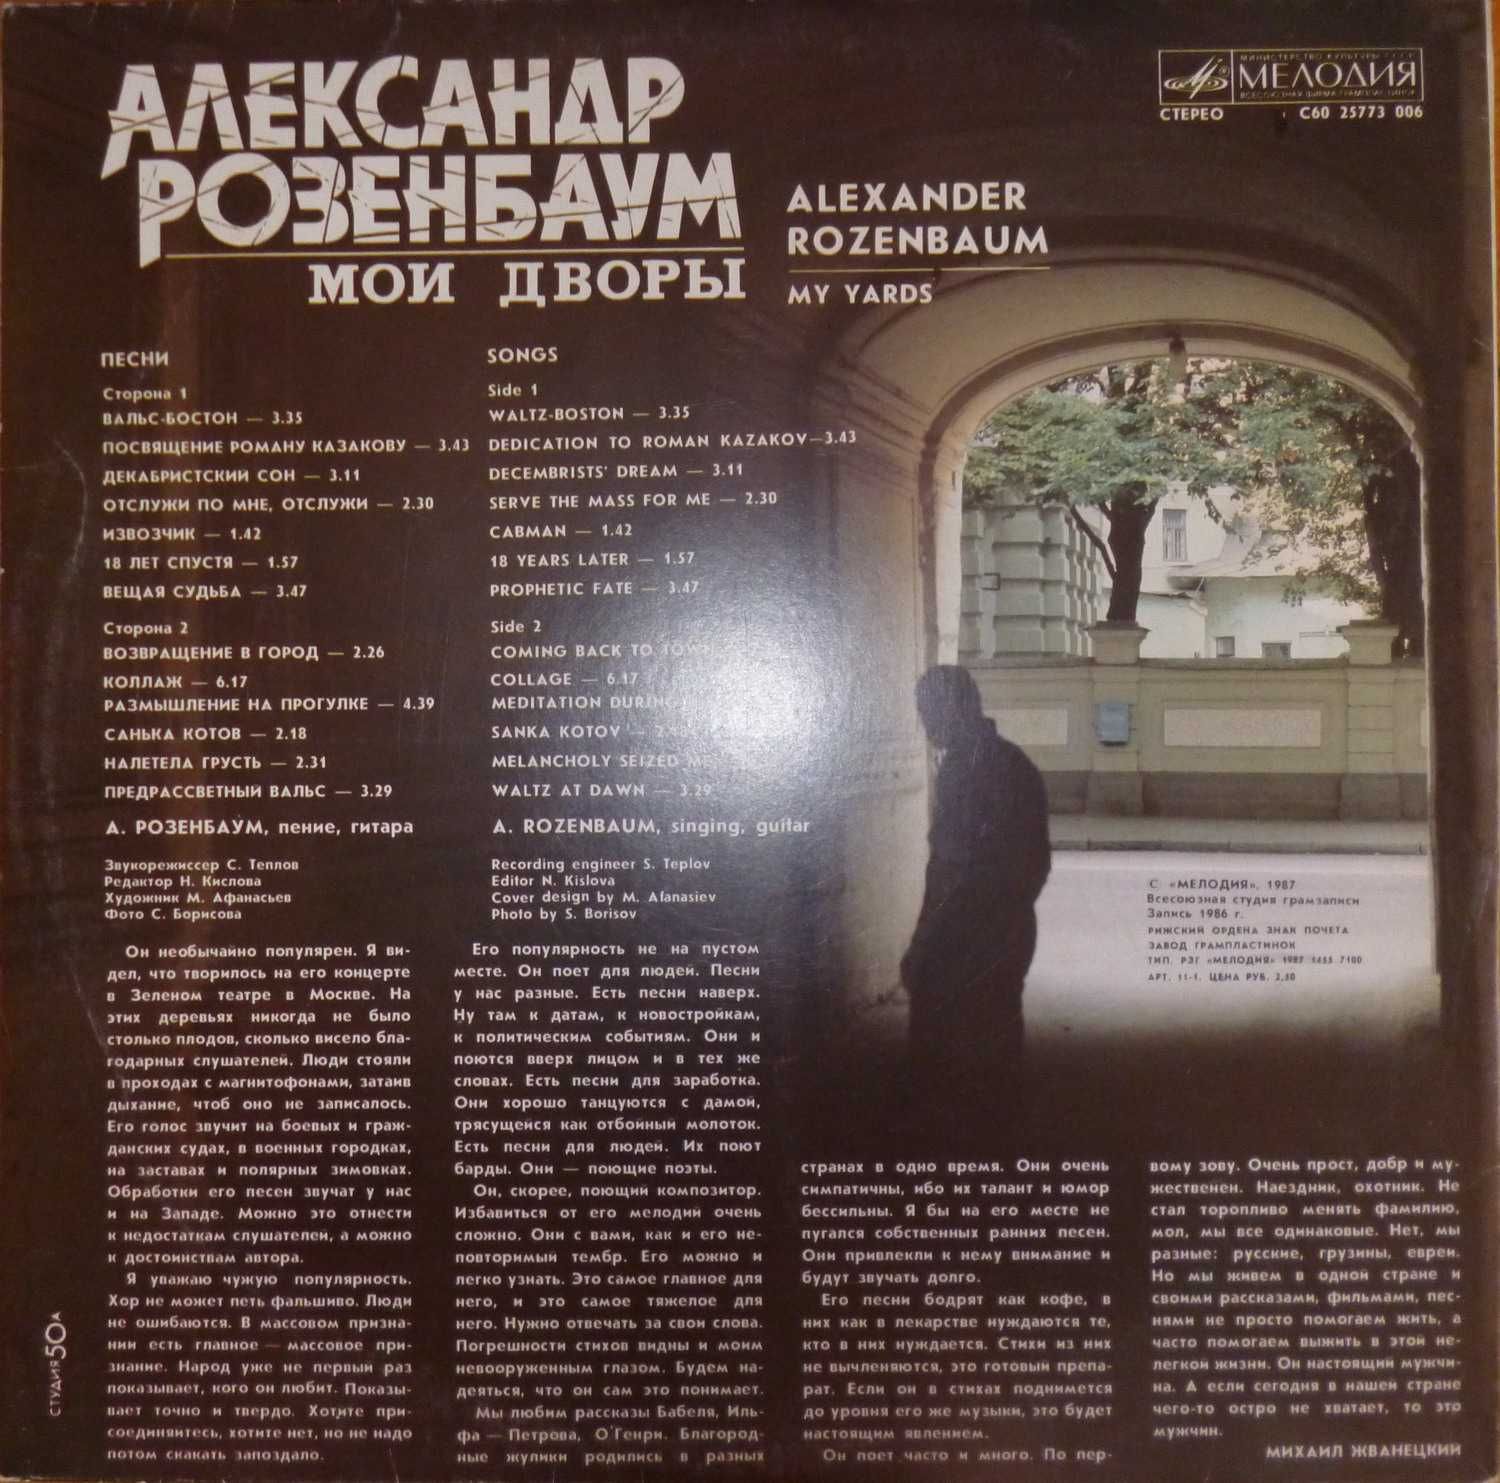 Б/у виниловая пластинка с песнями Александра Розенбаума